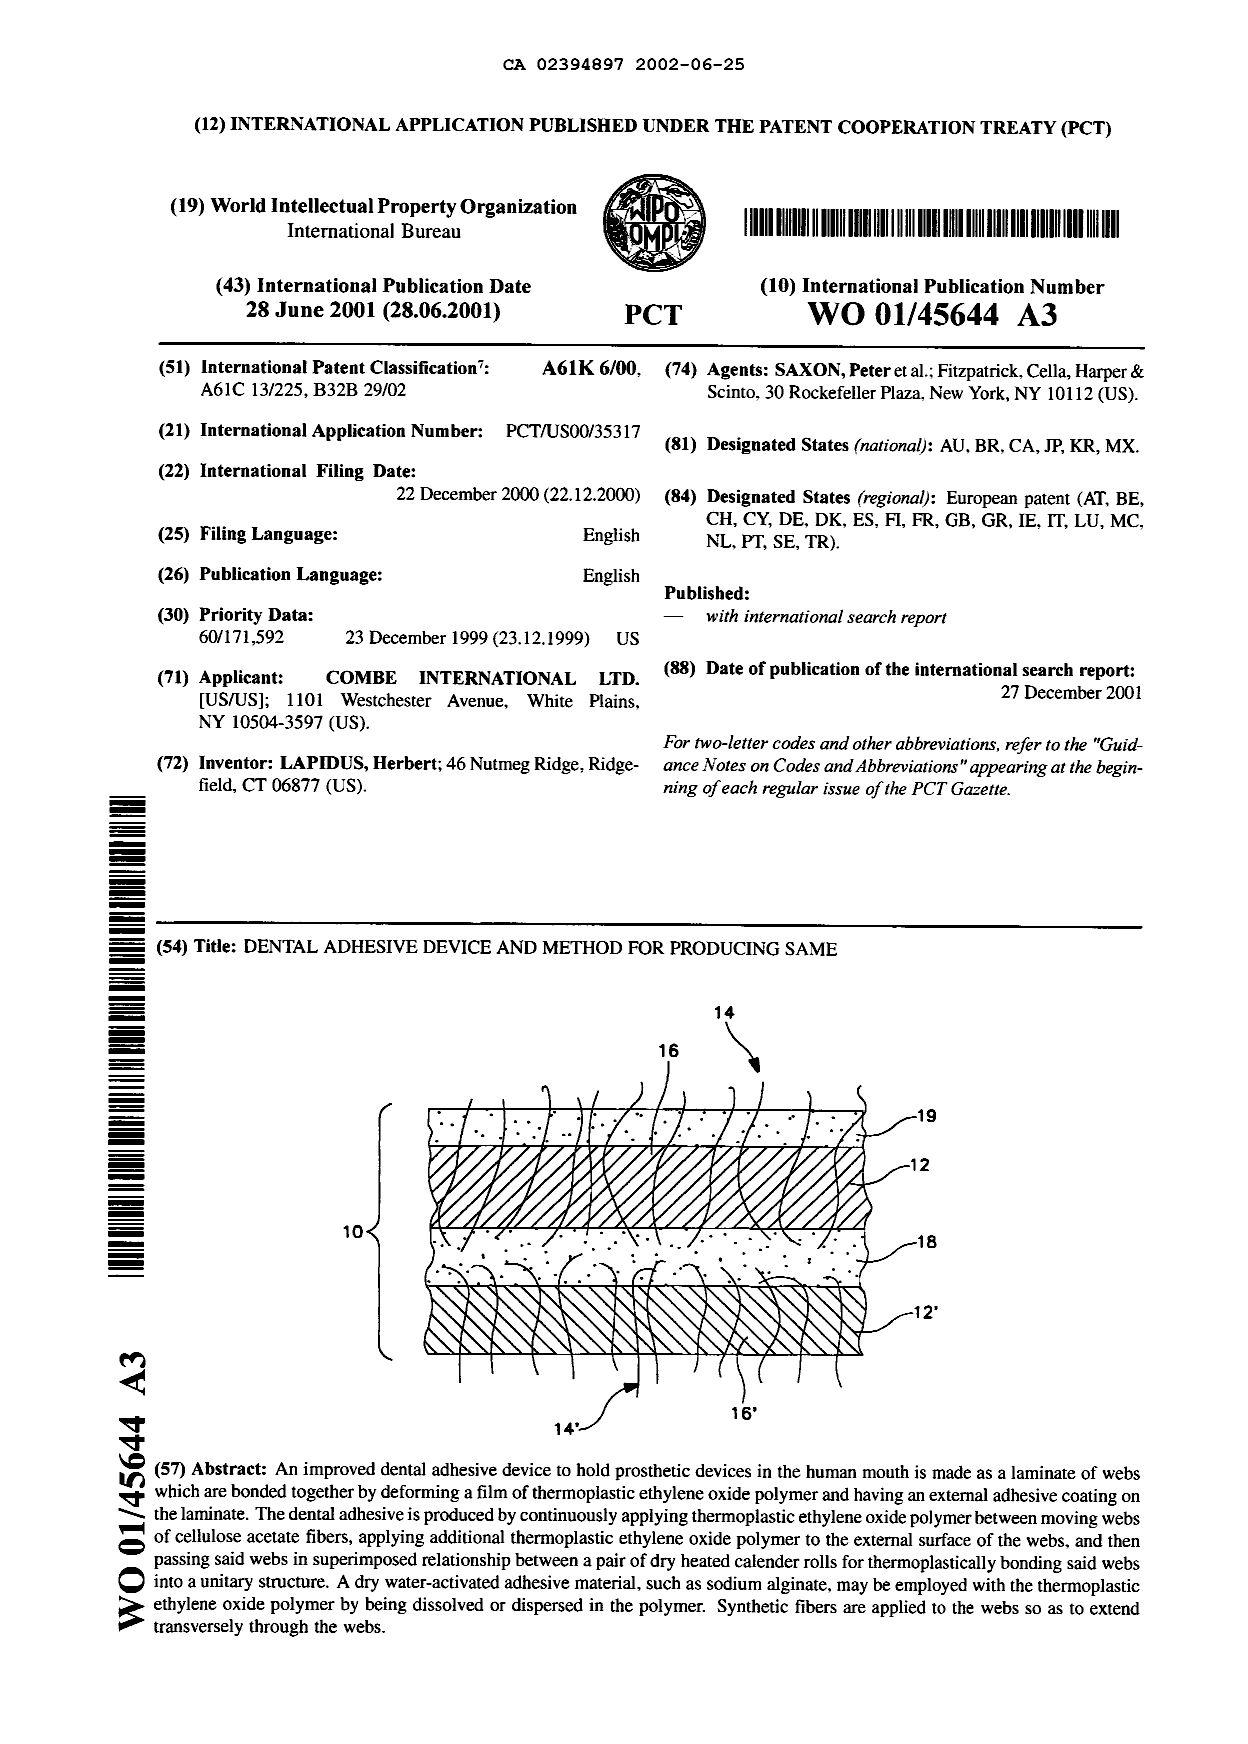 Document de brevet canadien 2394897. Abrégé 20020625. Image 1 de 1